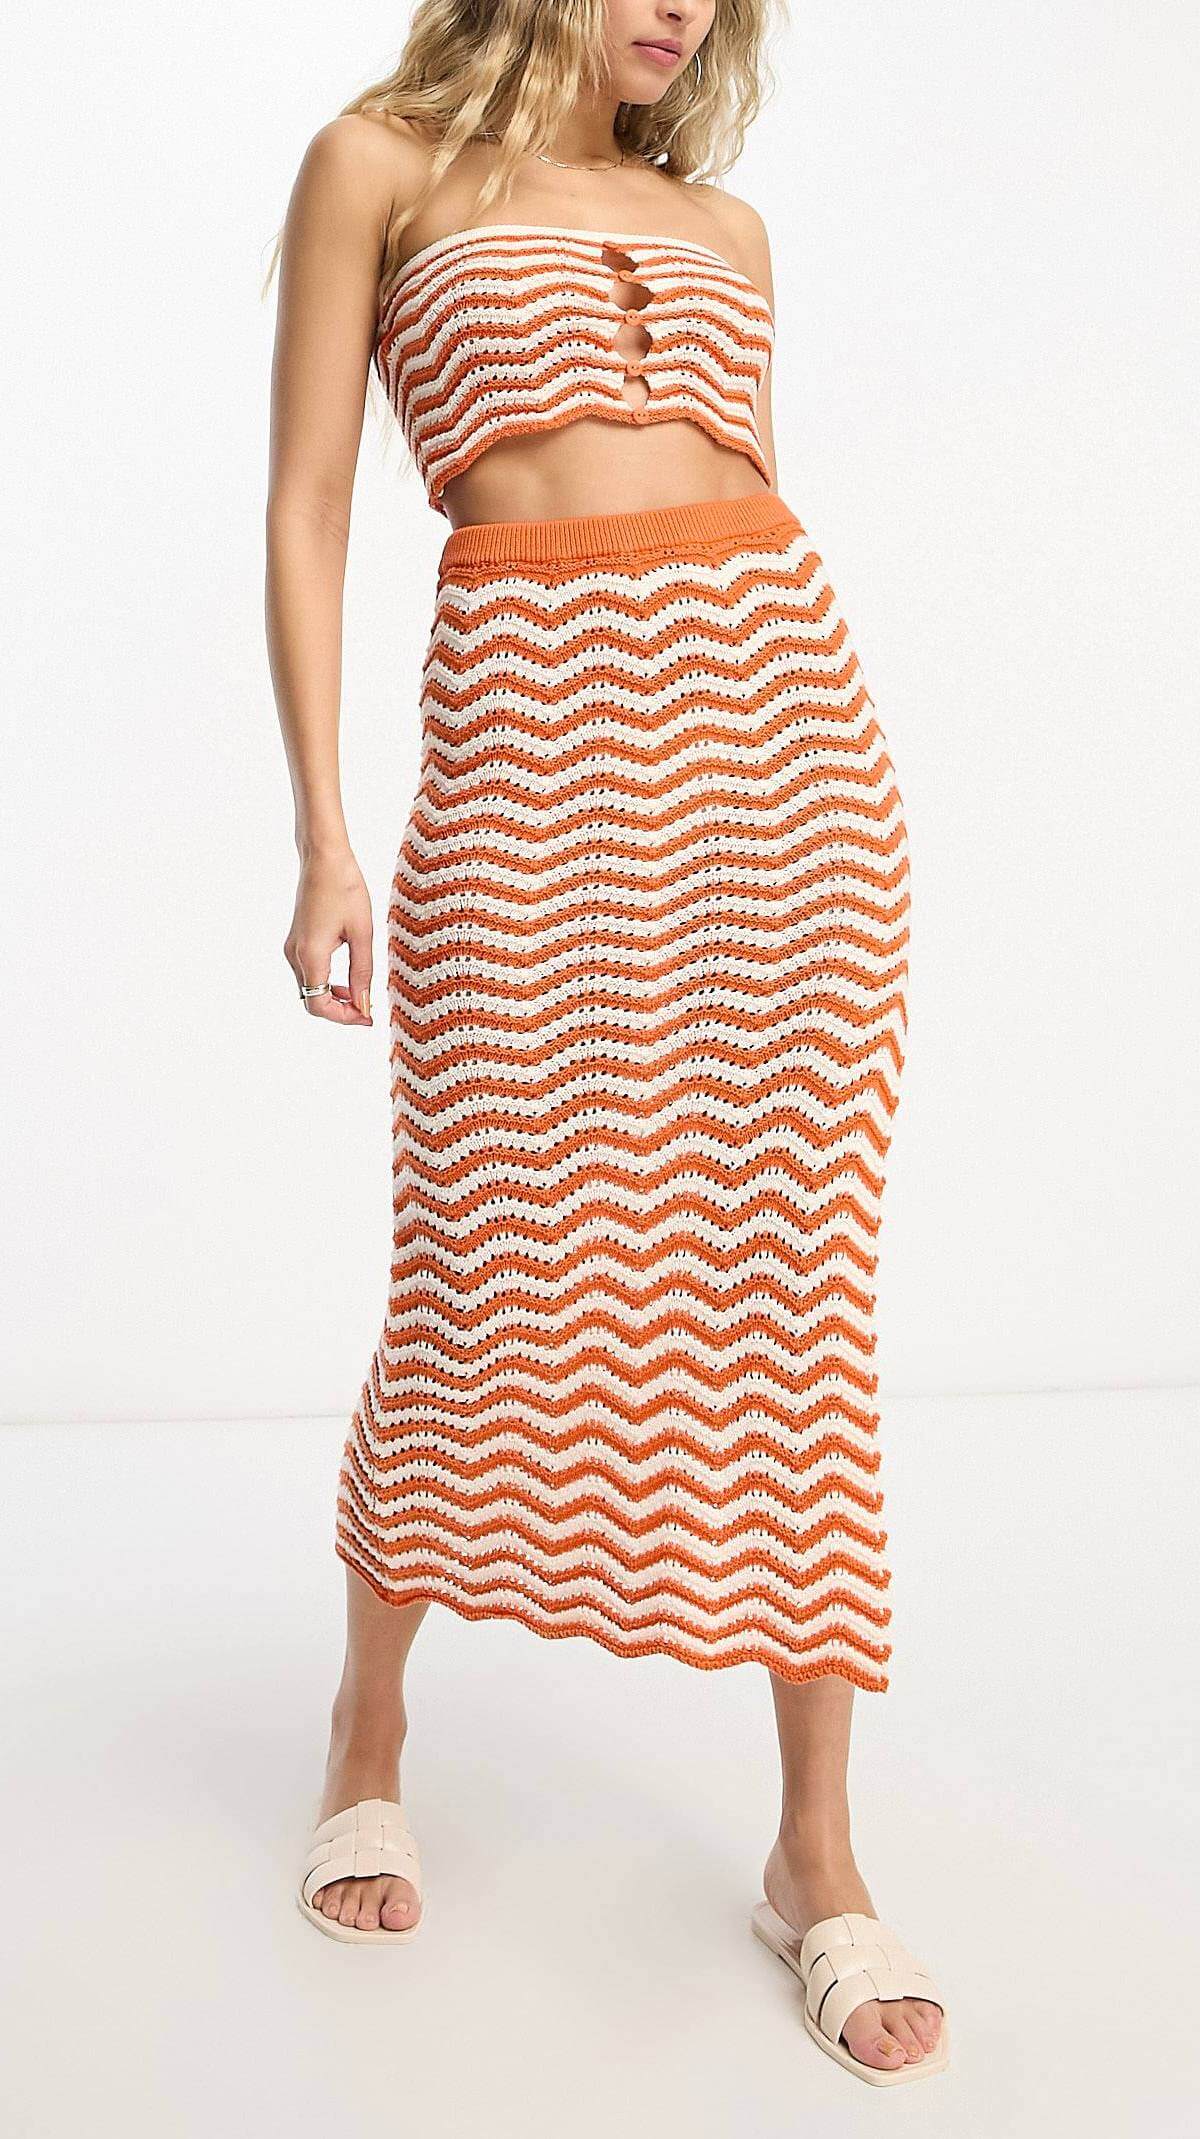 Вязаная пляжная юбка 4th & Reckless Island Crochet Co-ord, оранжевый/белый